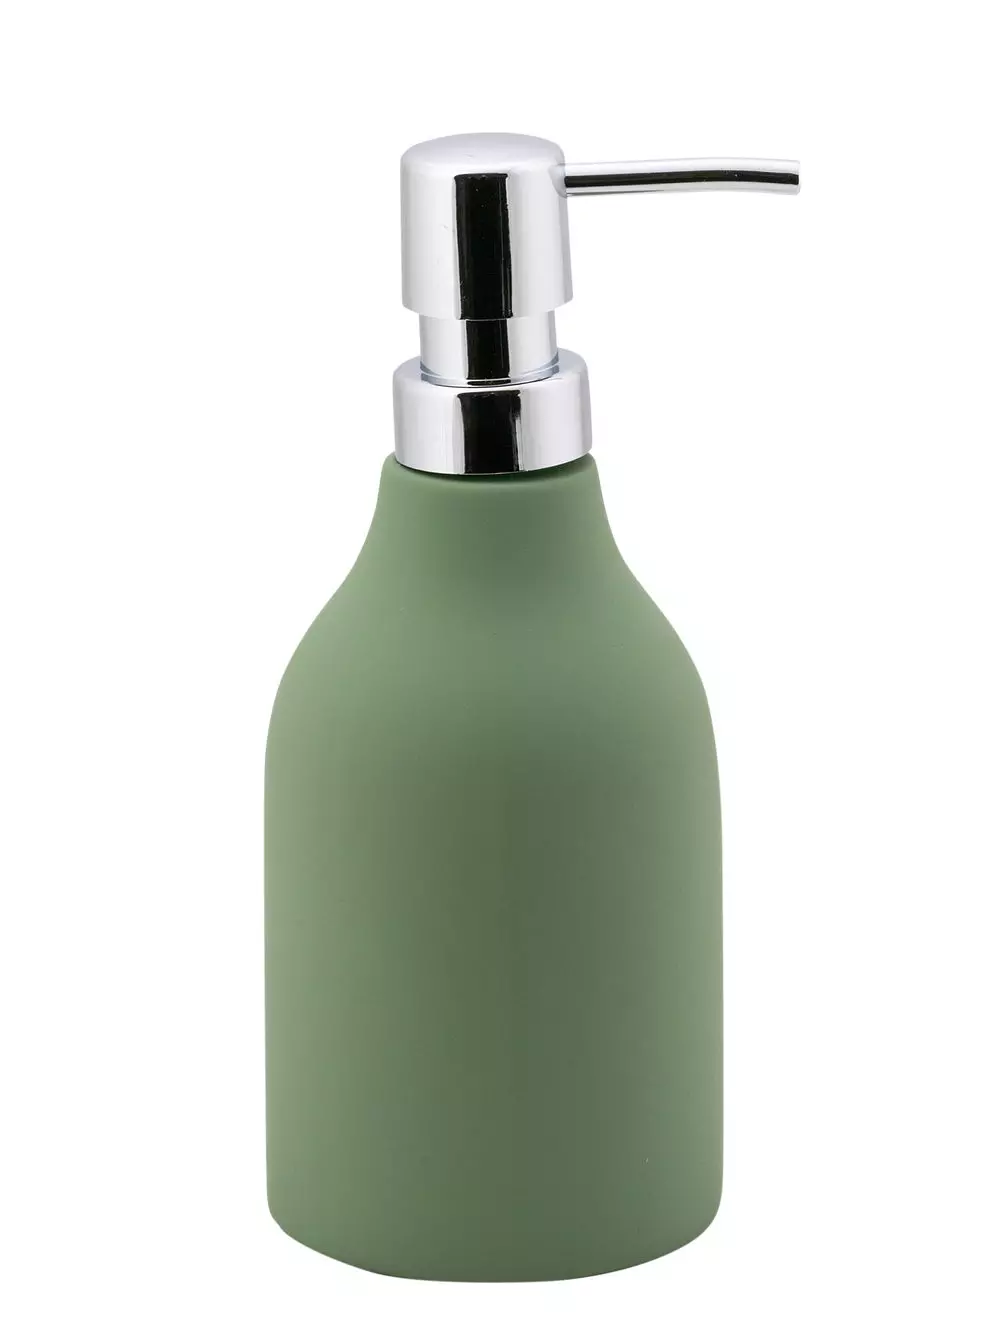 Дозатор для жидкого мыла Unna оливковый, керамика/резина, SWTC-1204OLV-01